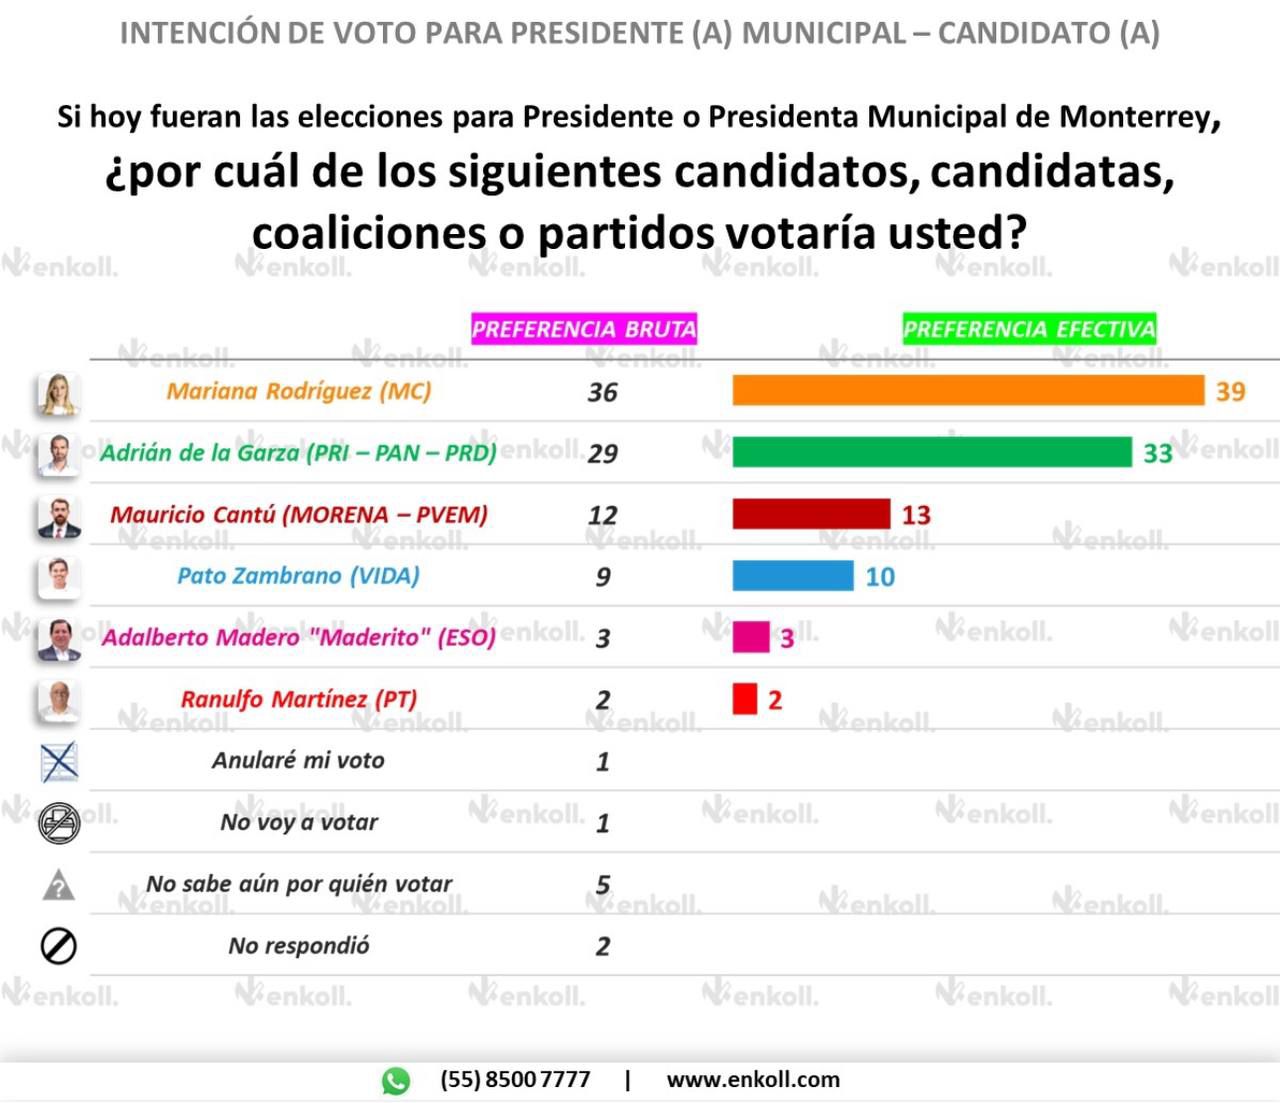 Ganaría Mariana Rodríguez con 39%: Encuesta Enkoll